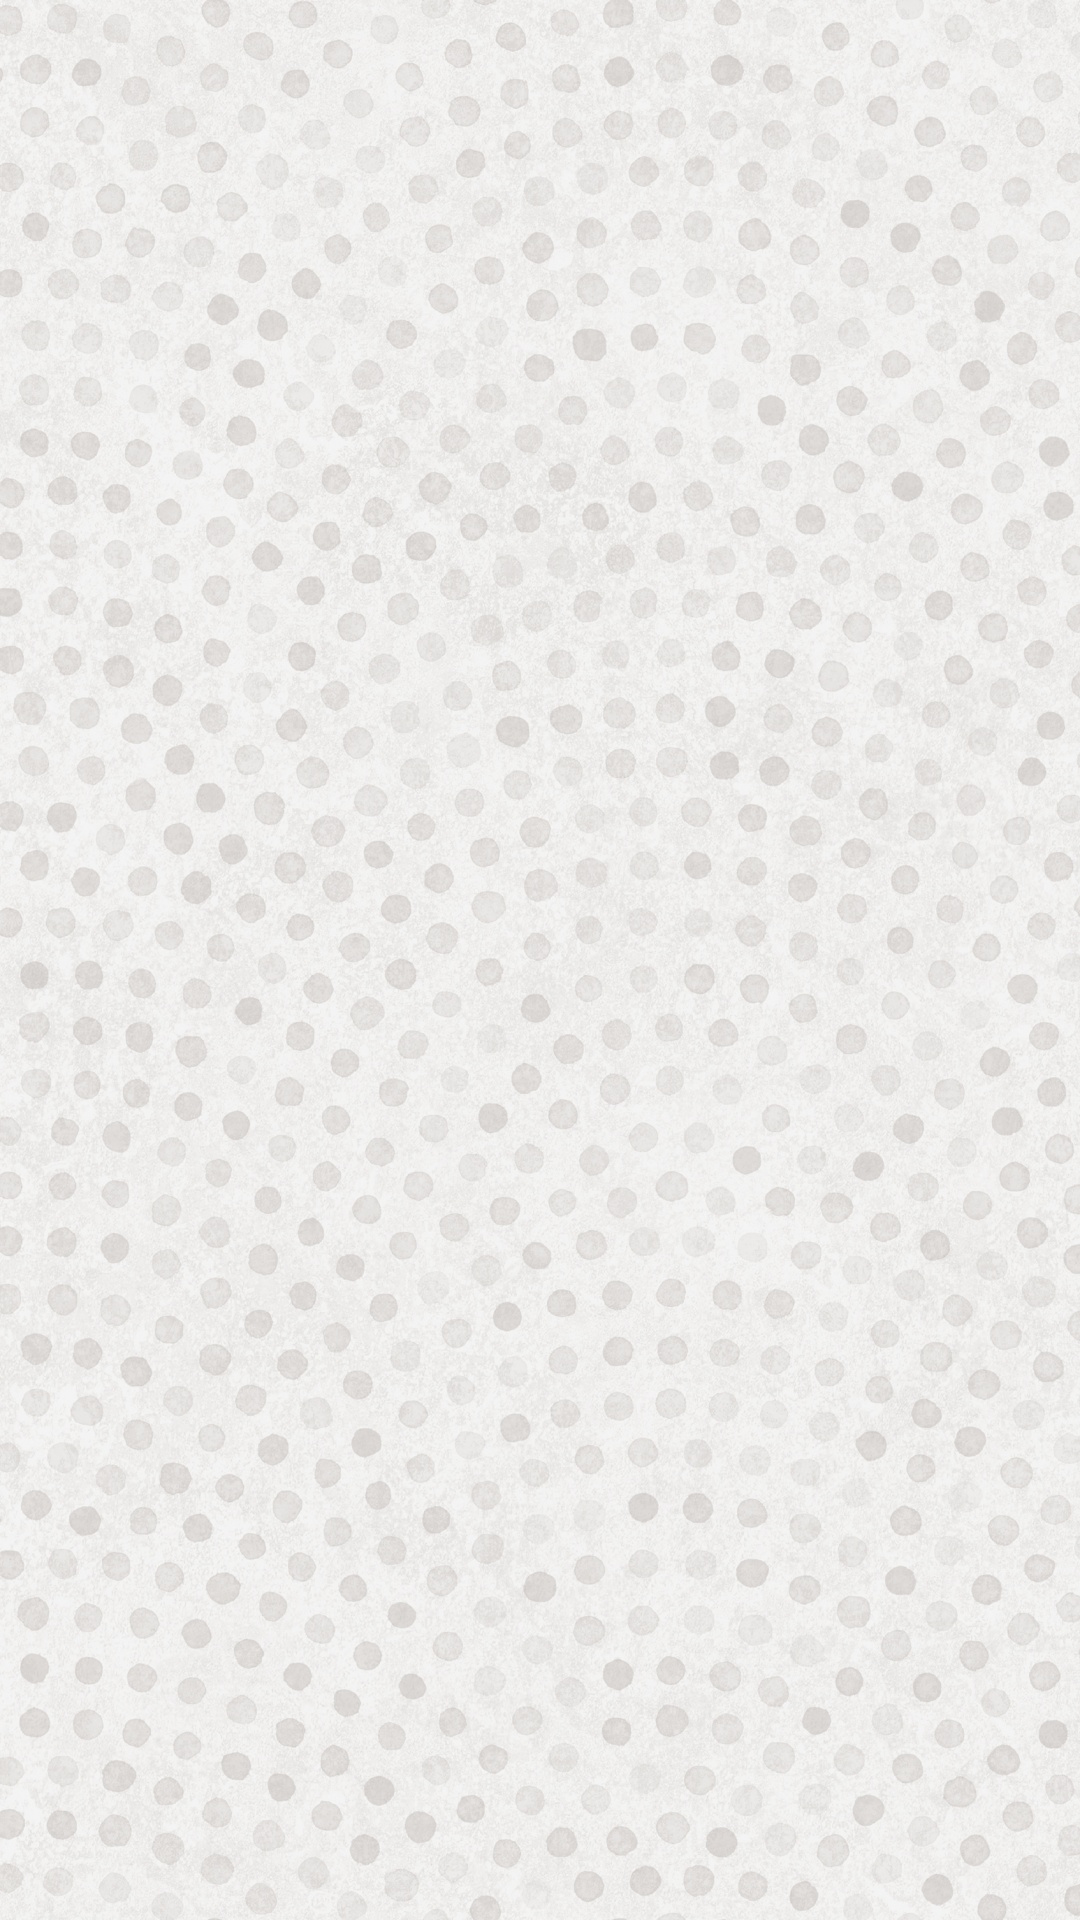 Textile à Pois Blancs et Noirs. Wallpaper in 1080x1920 Resolution